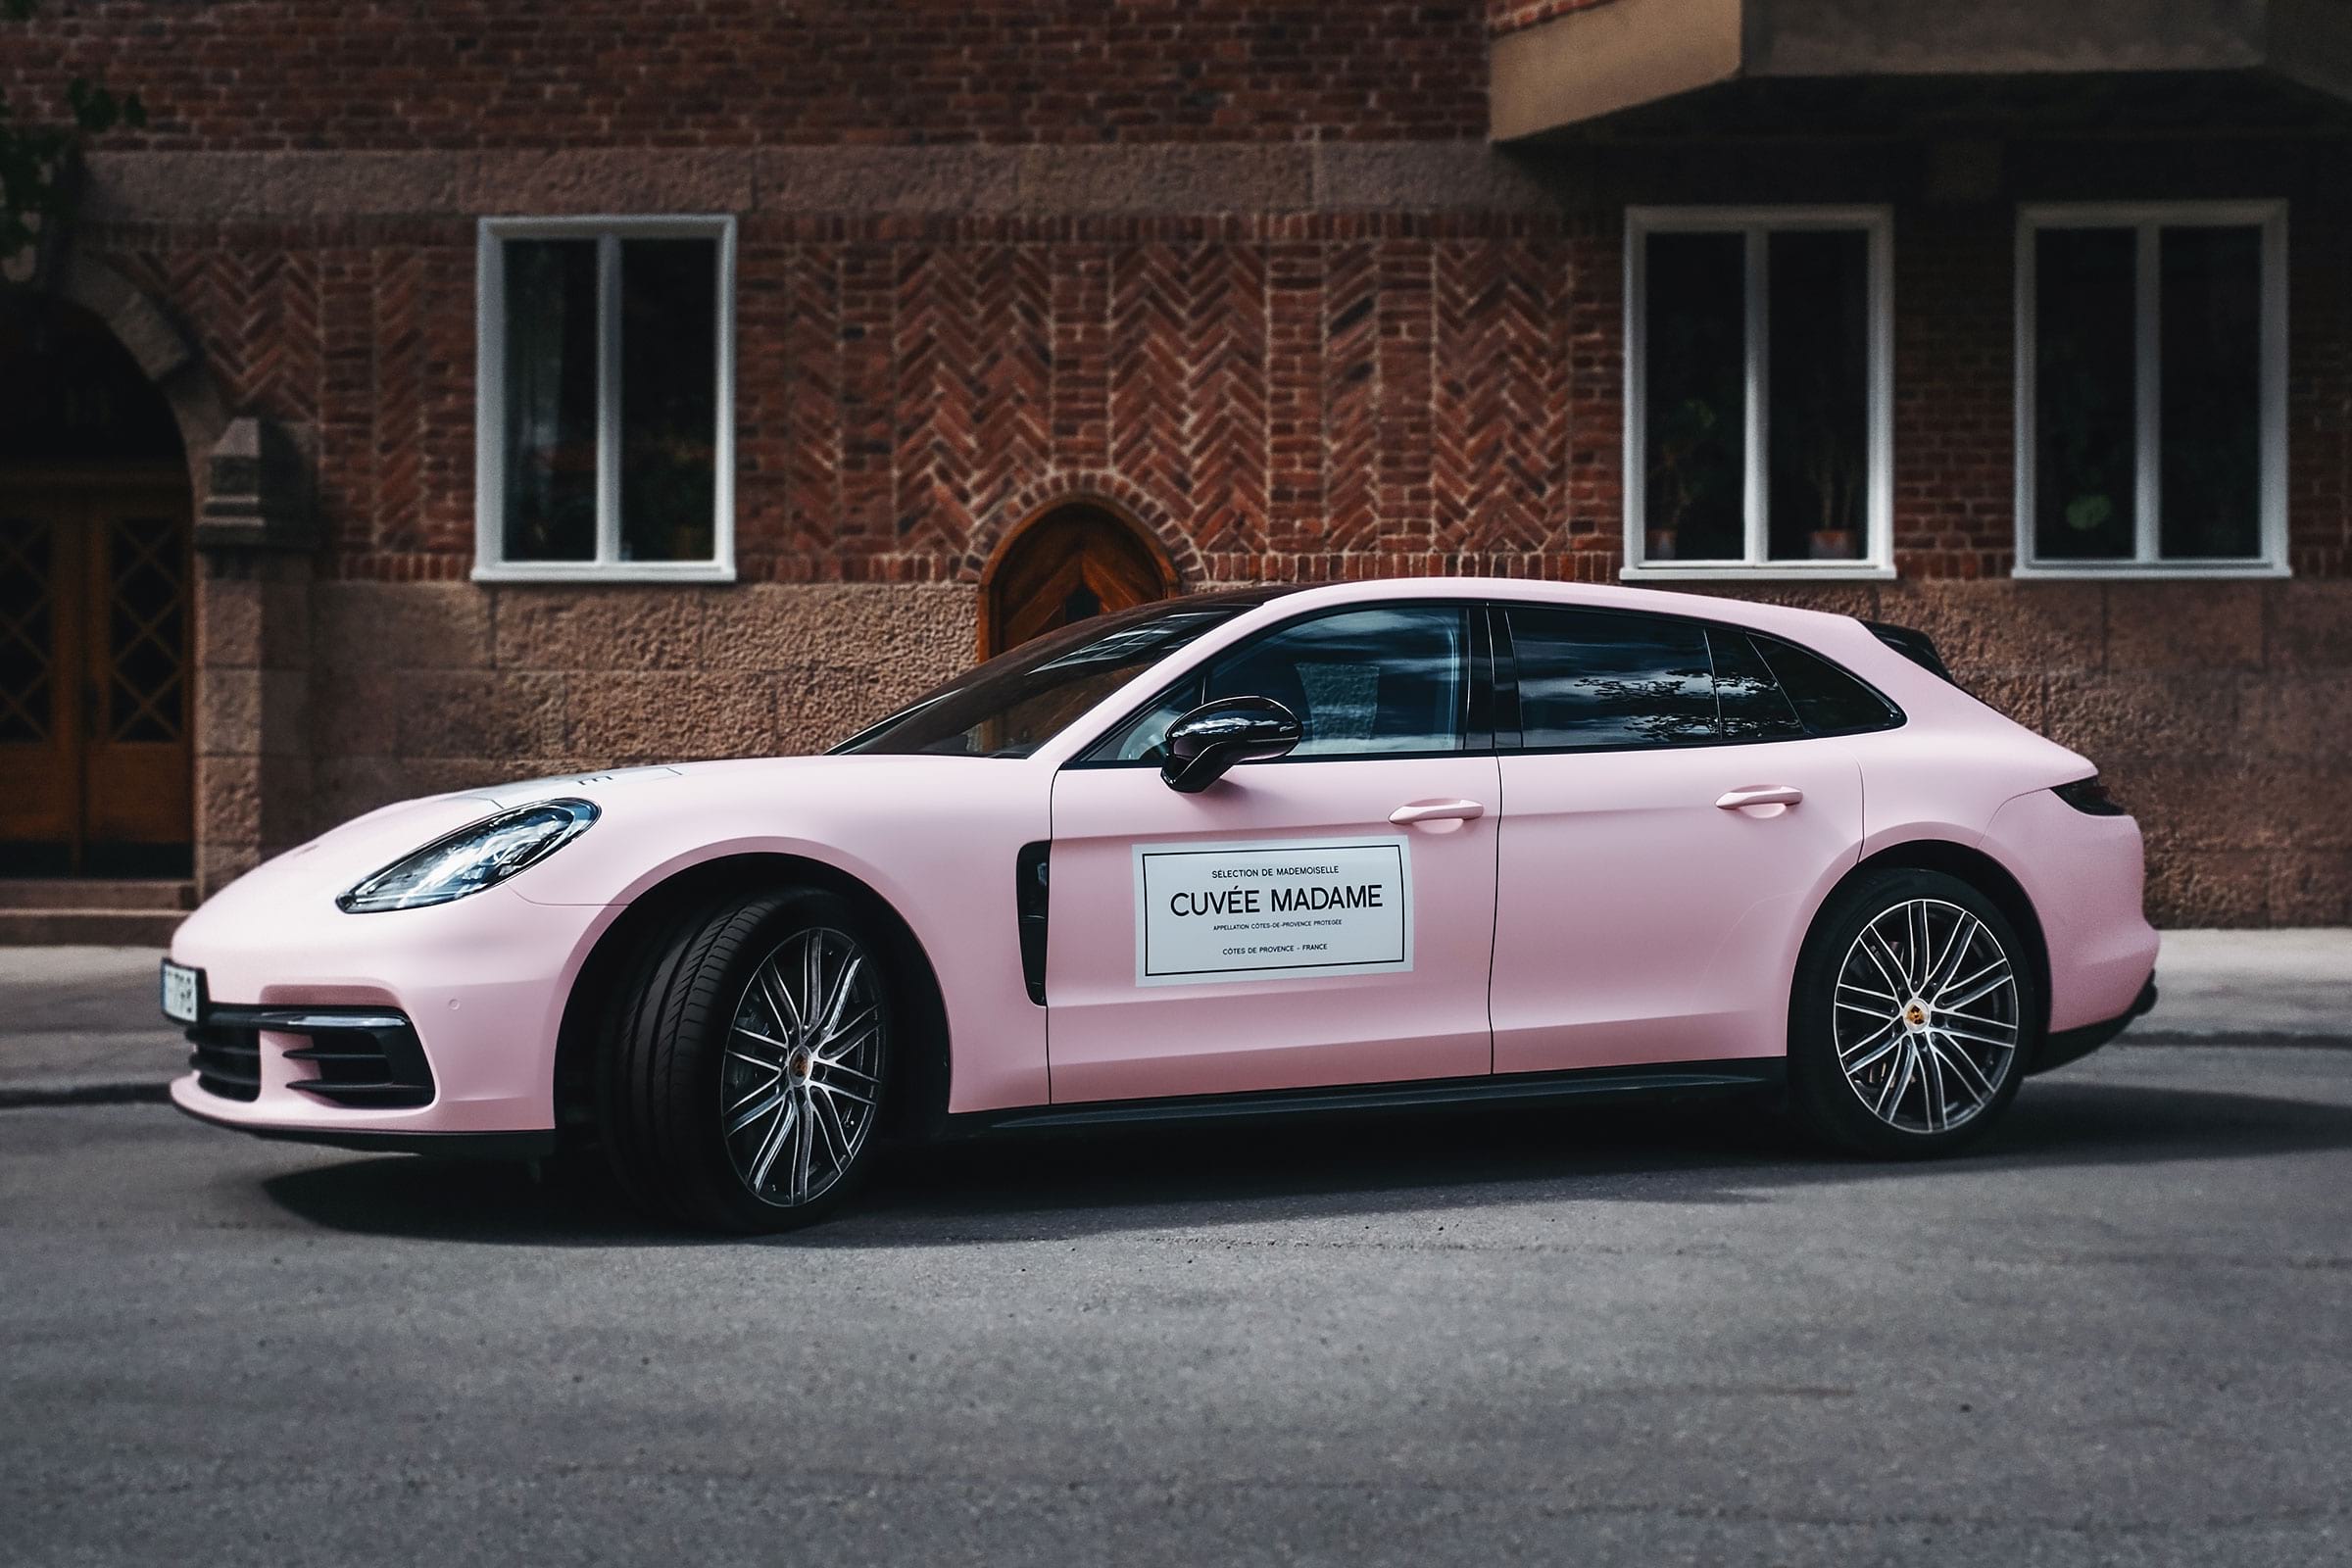 Hyr en rosa Porsche i sommar – med kylt vin och chaufför